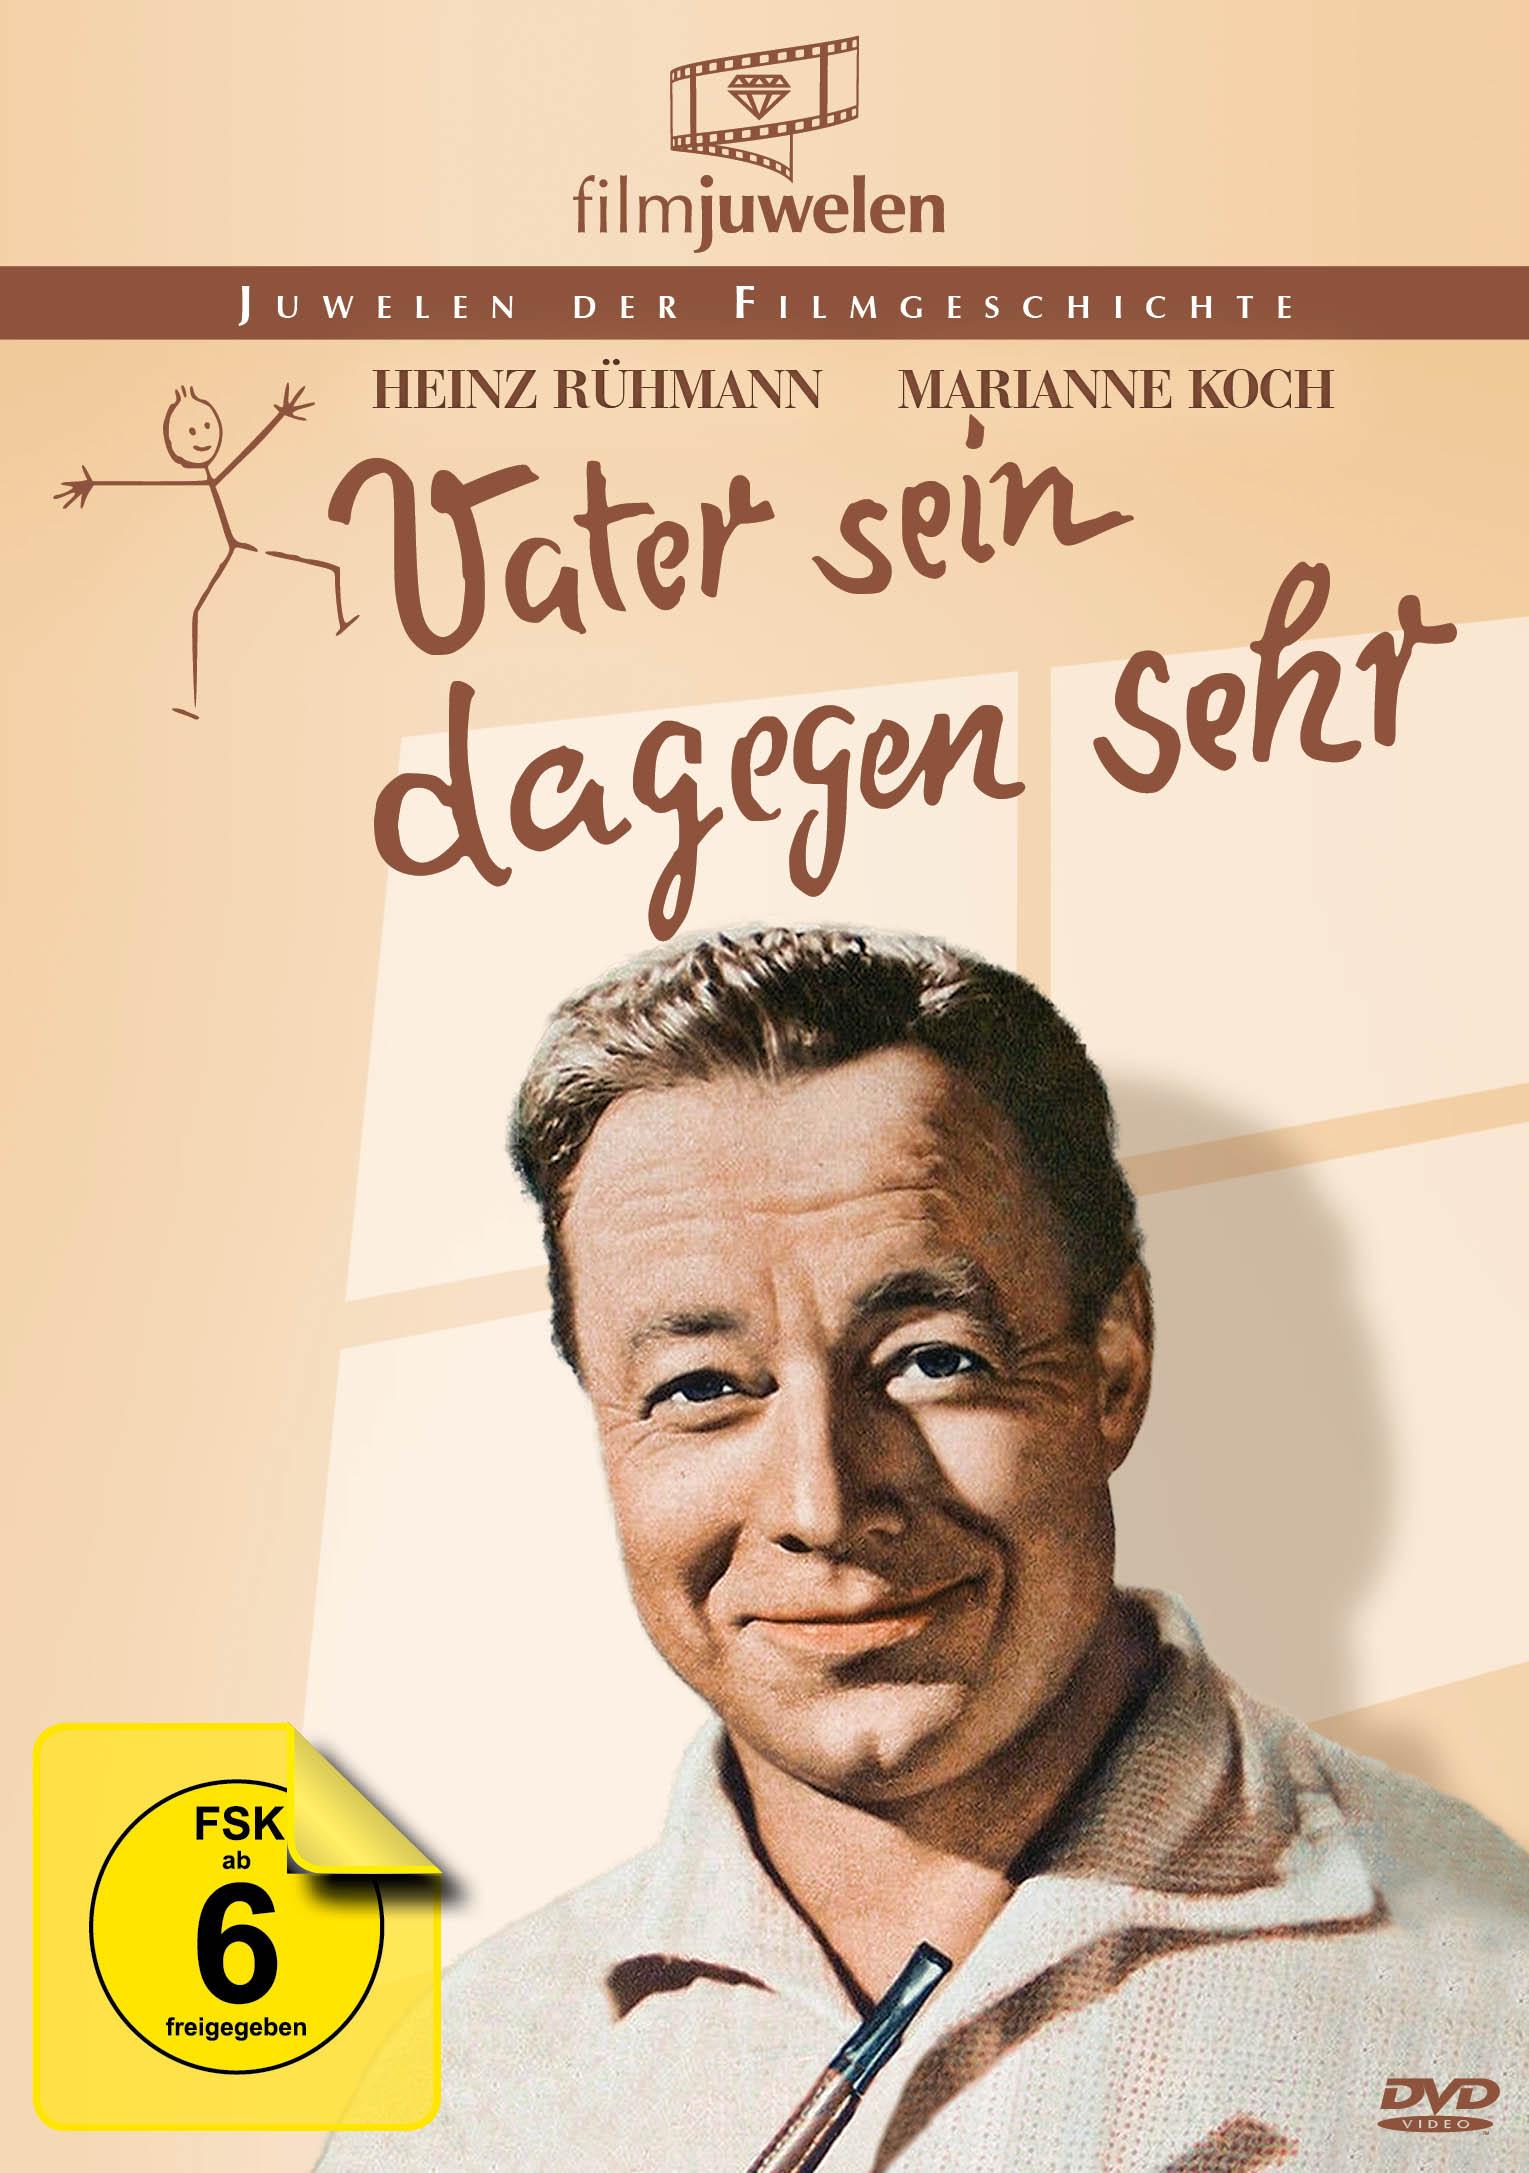 Heinz Rühmann sehr Edition DVD sein Vater dagegen 